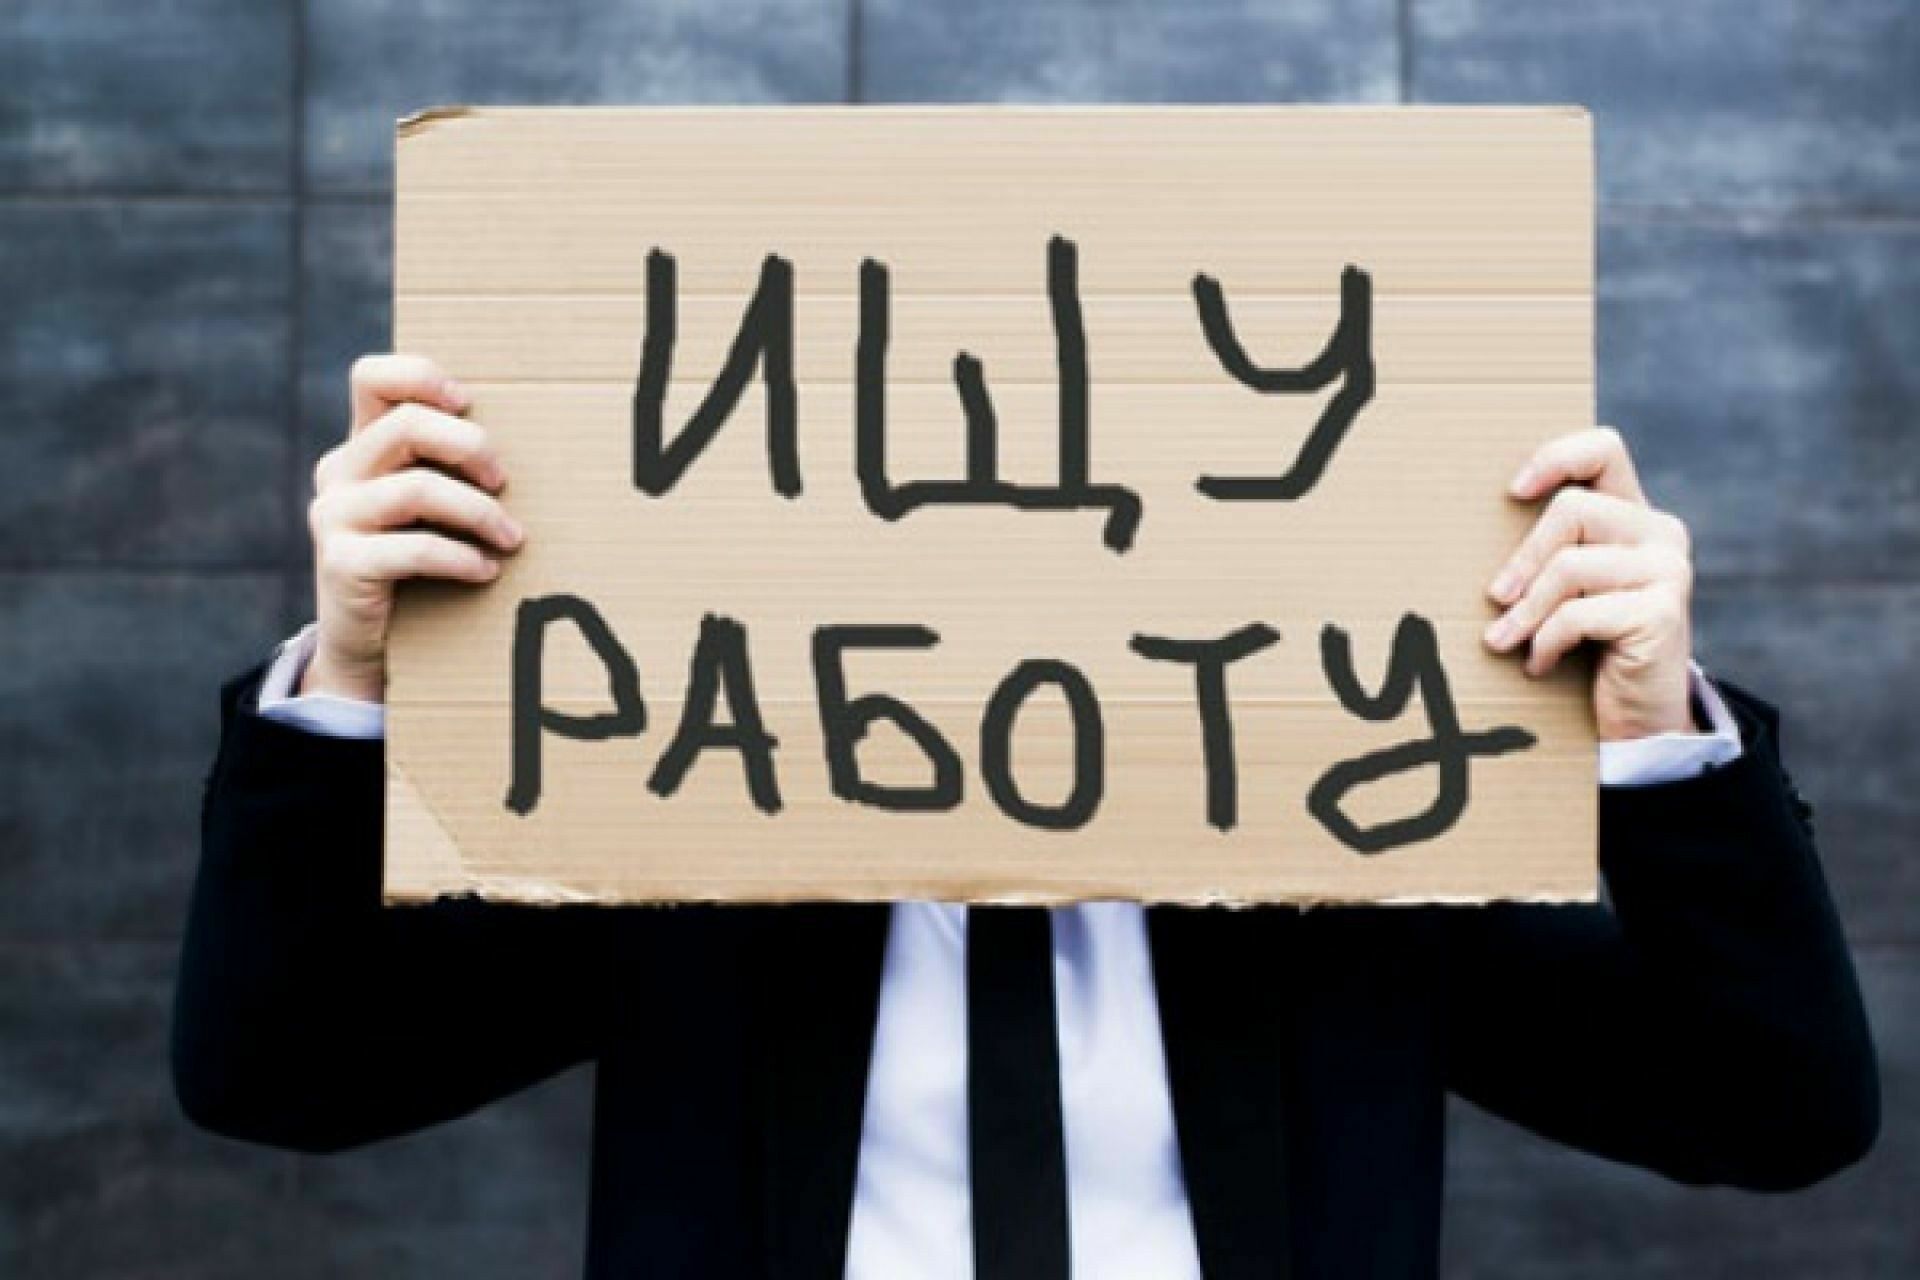 Проректор Академии труда оценил уровень безработицы в РФ вдвое выше официального